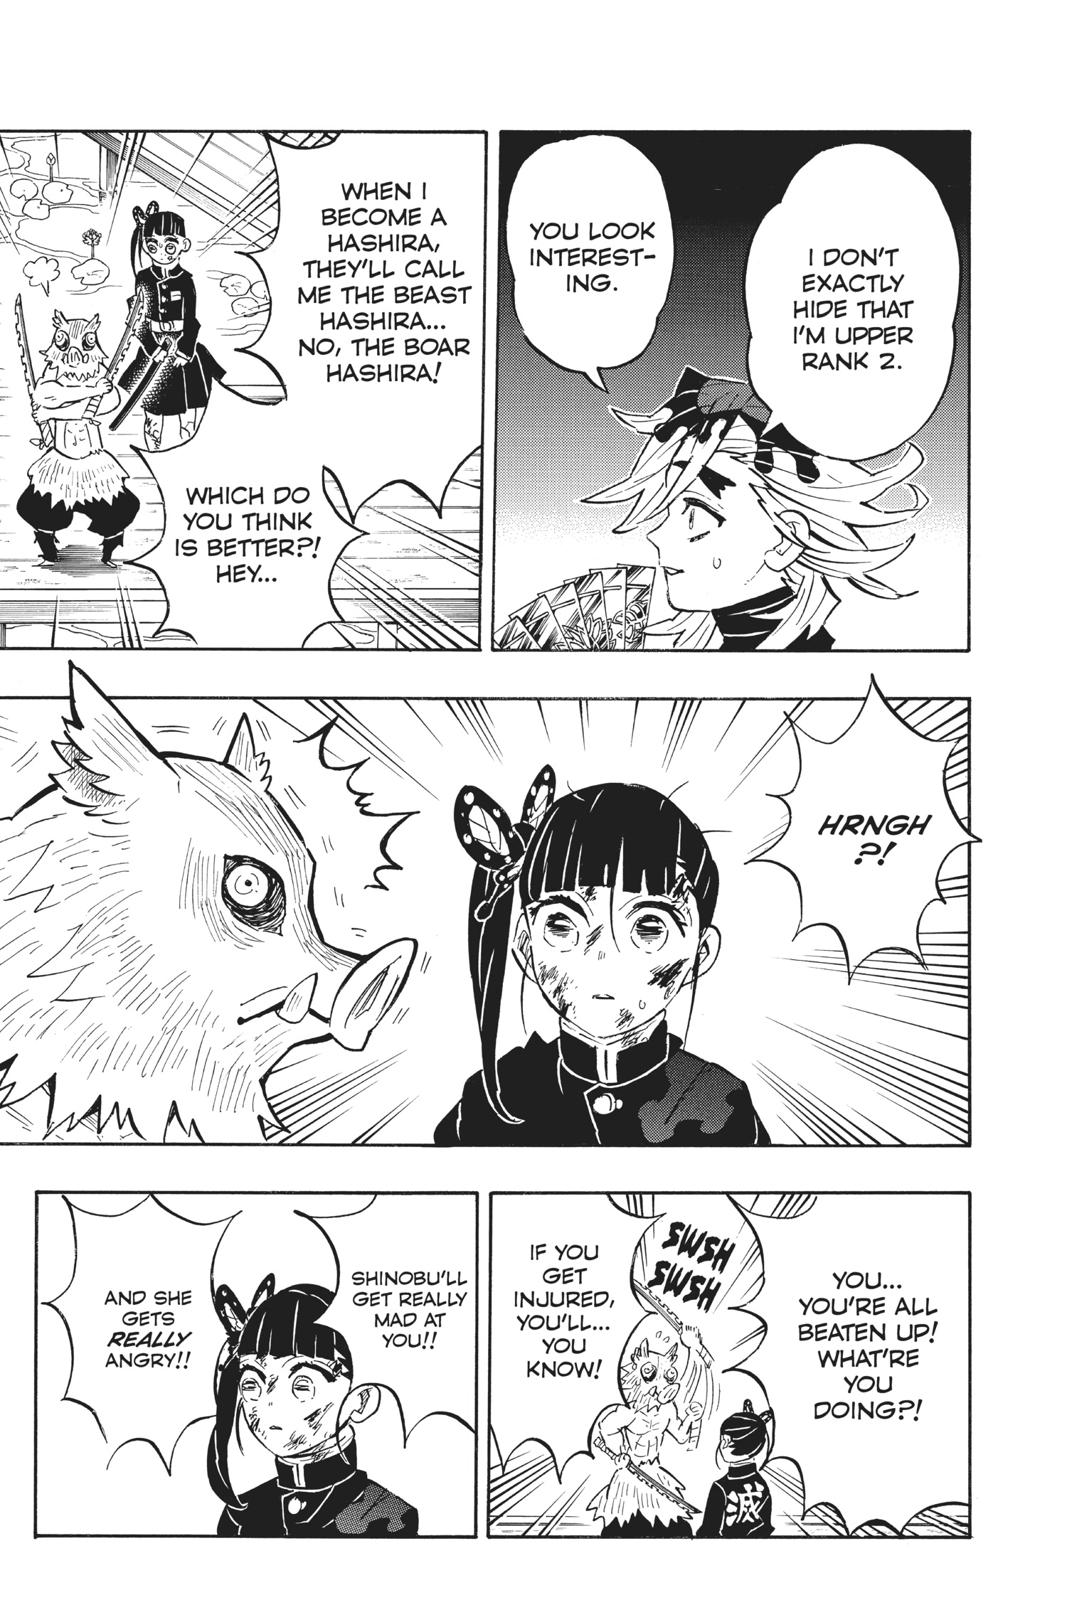 Demon Slayer Manga Manga Chapter - 159 - image 3